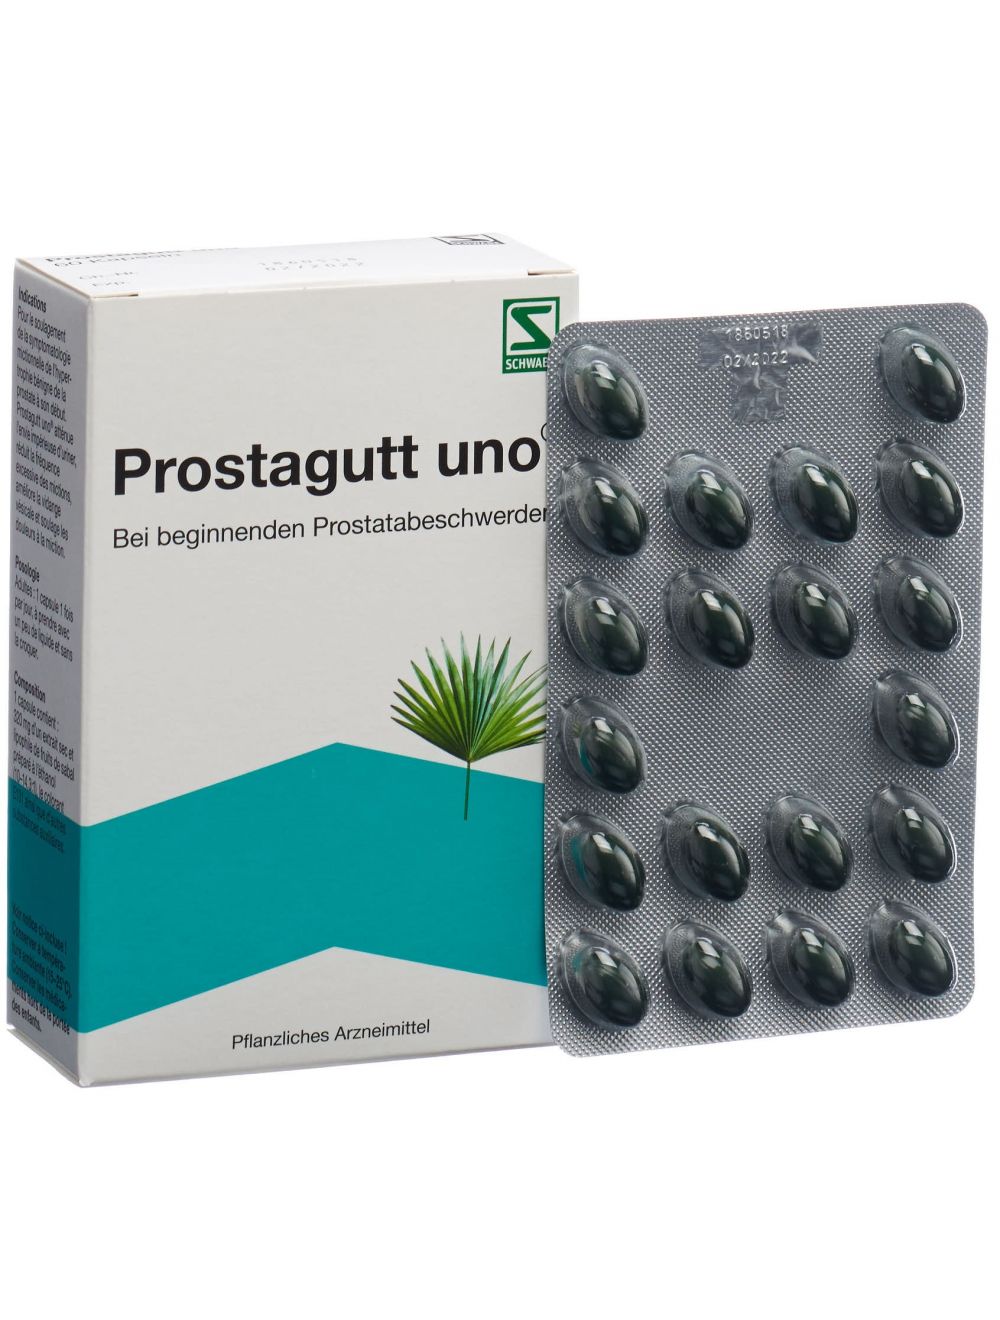 traitement prostate sans ordonnance